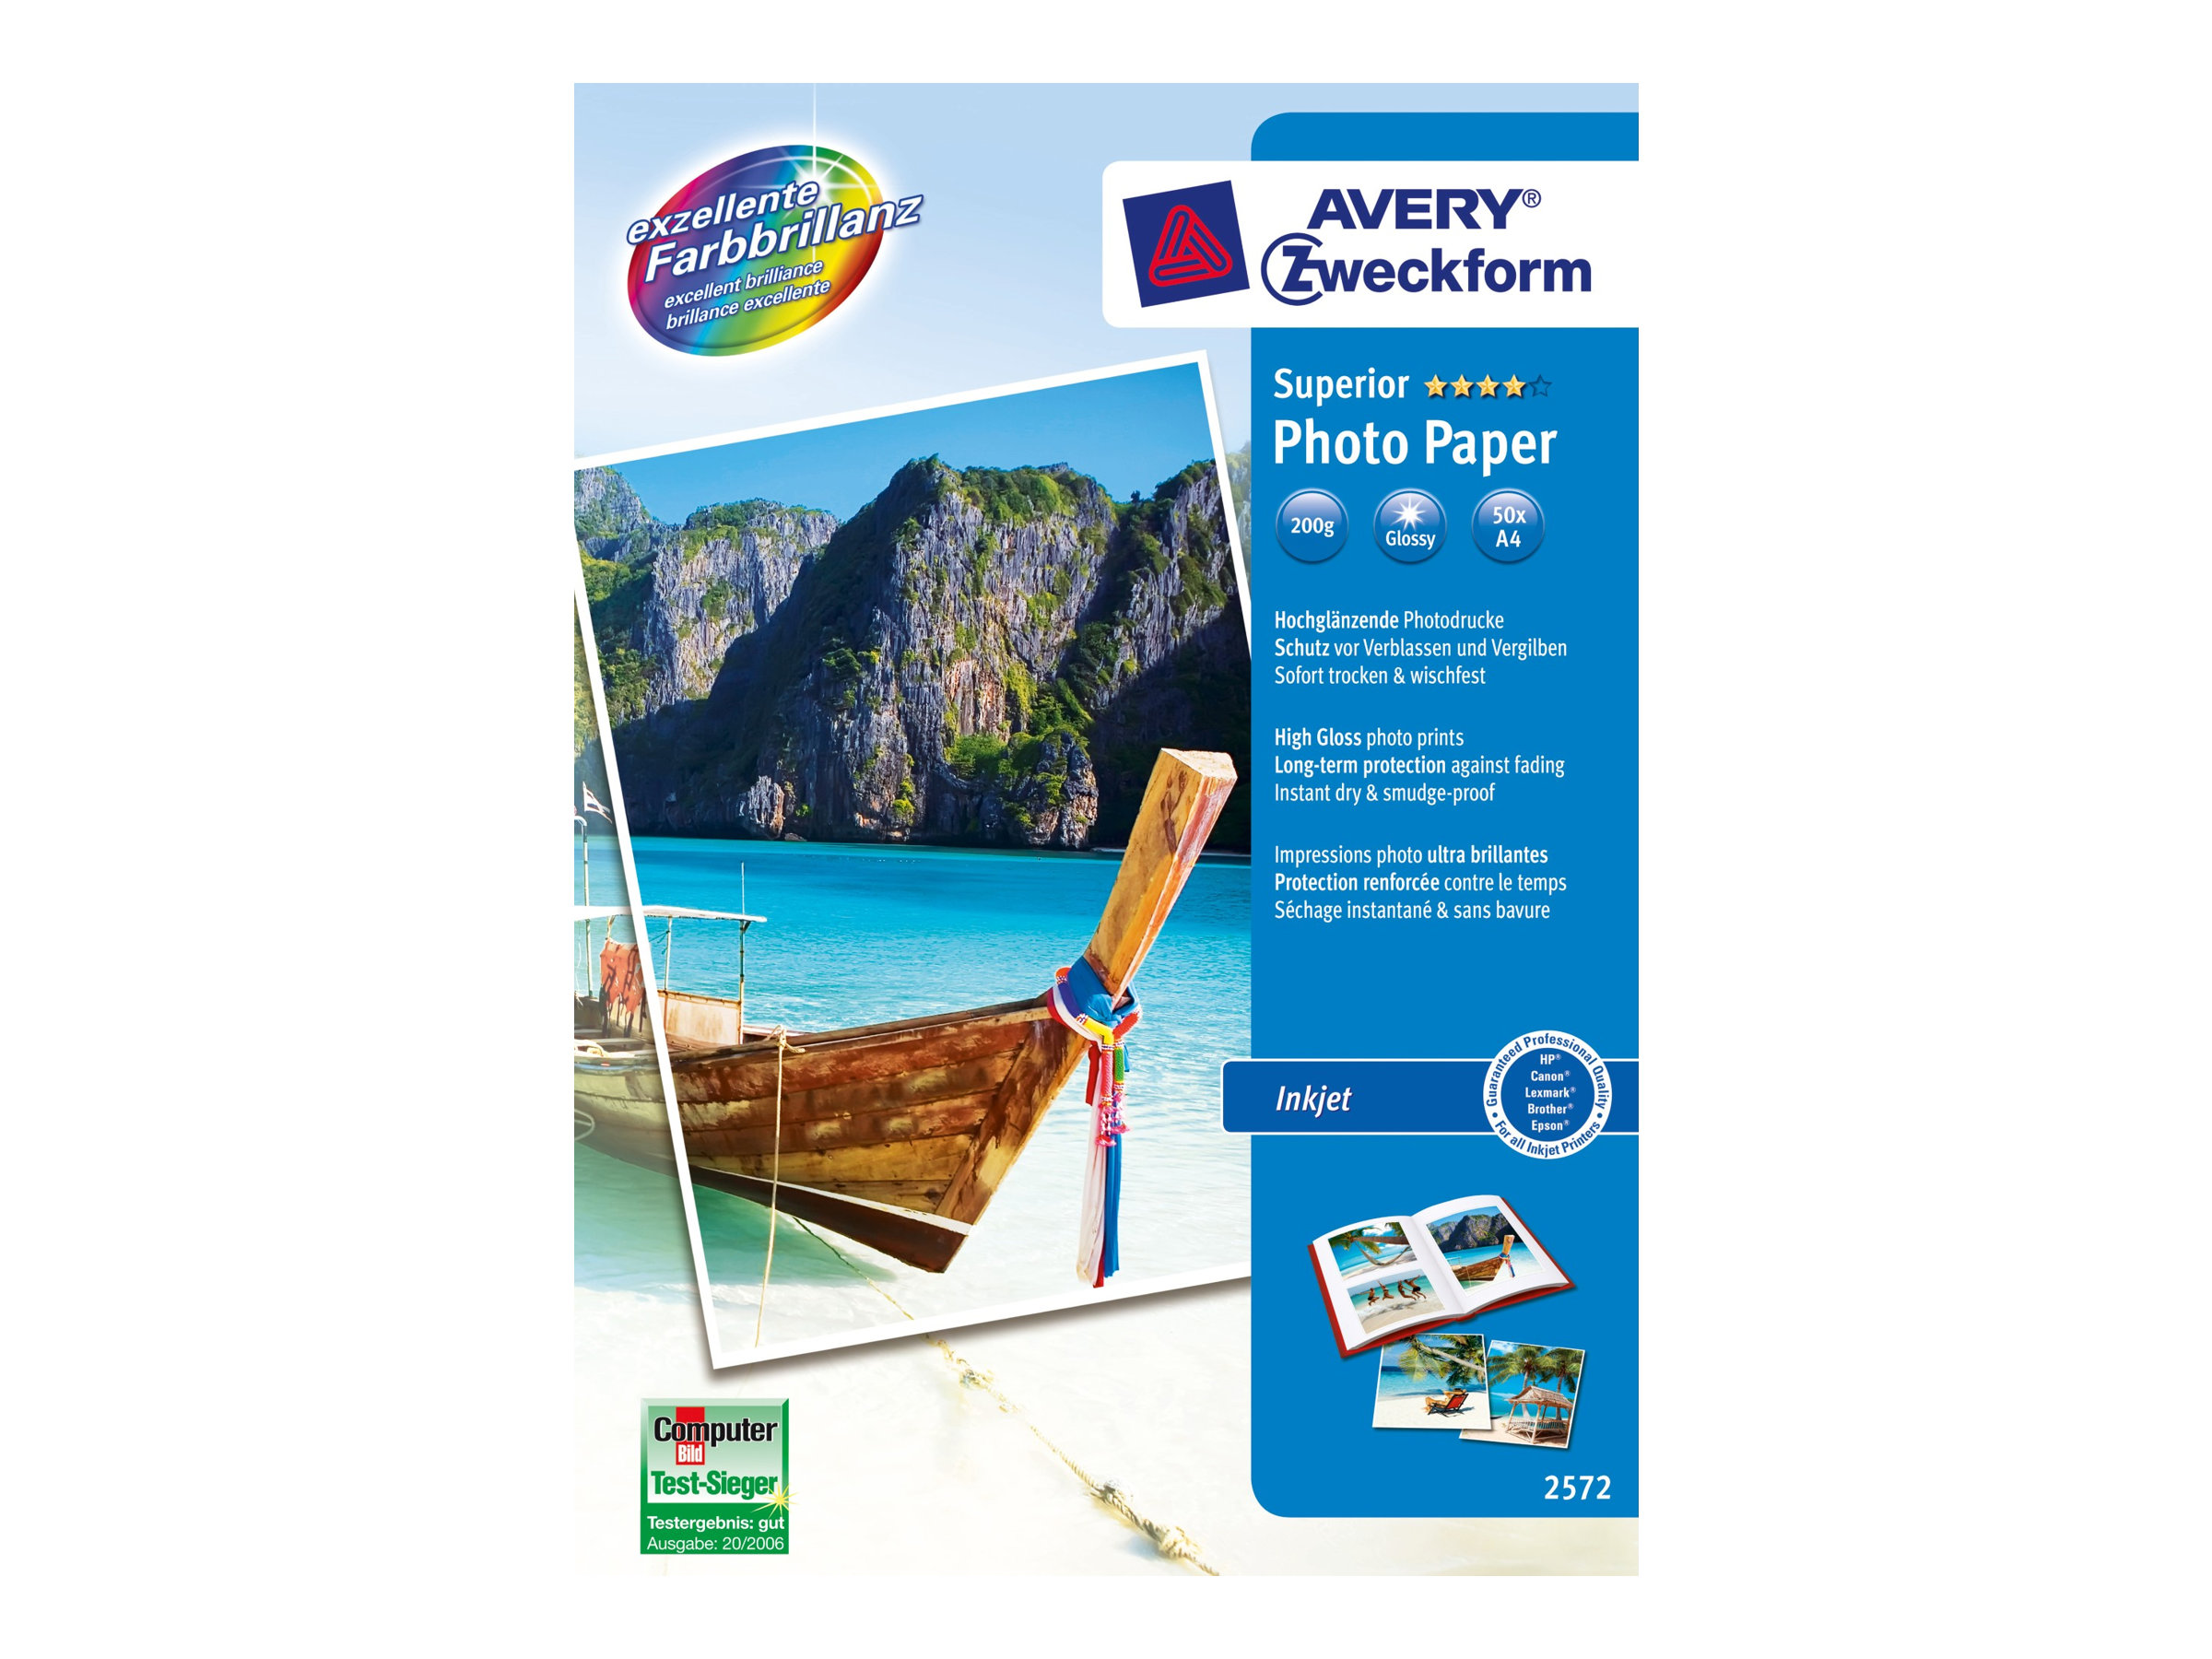 Avery Zweckform Superior Inkjet Photo Paper 2572 - Hochglnzend - weiss - A4 (210 x 297 mm) - 200 g/m - 50 Blatt Fotopapier